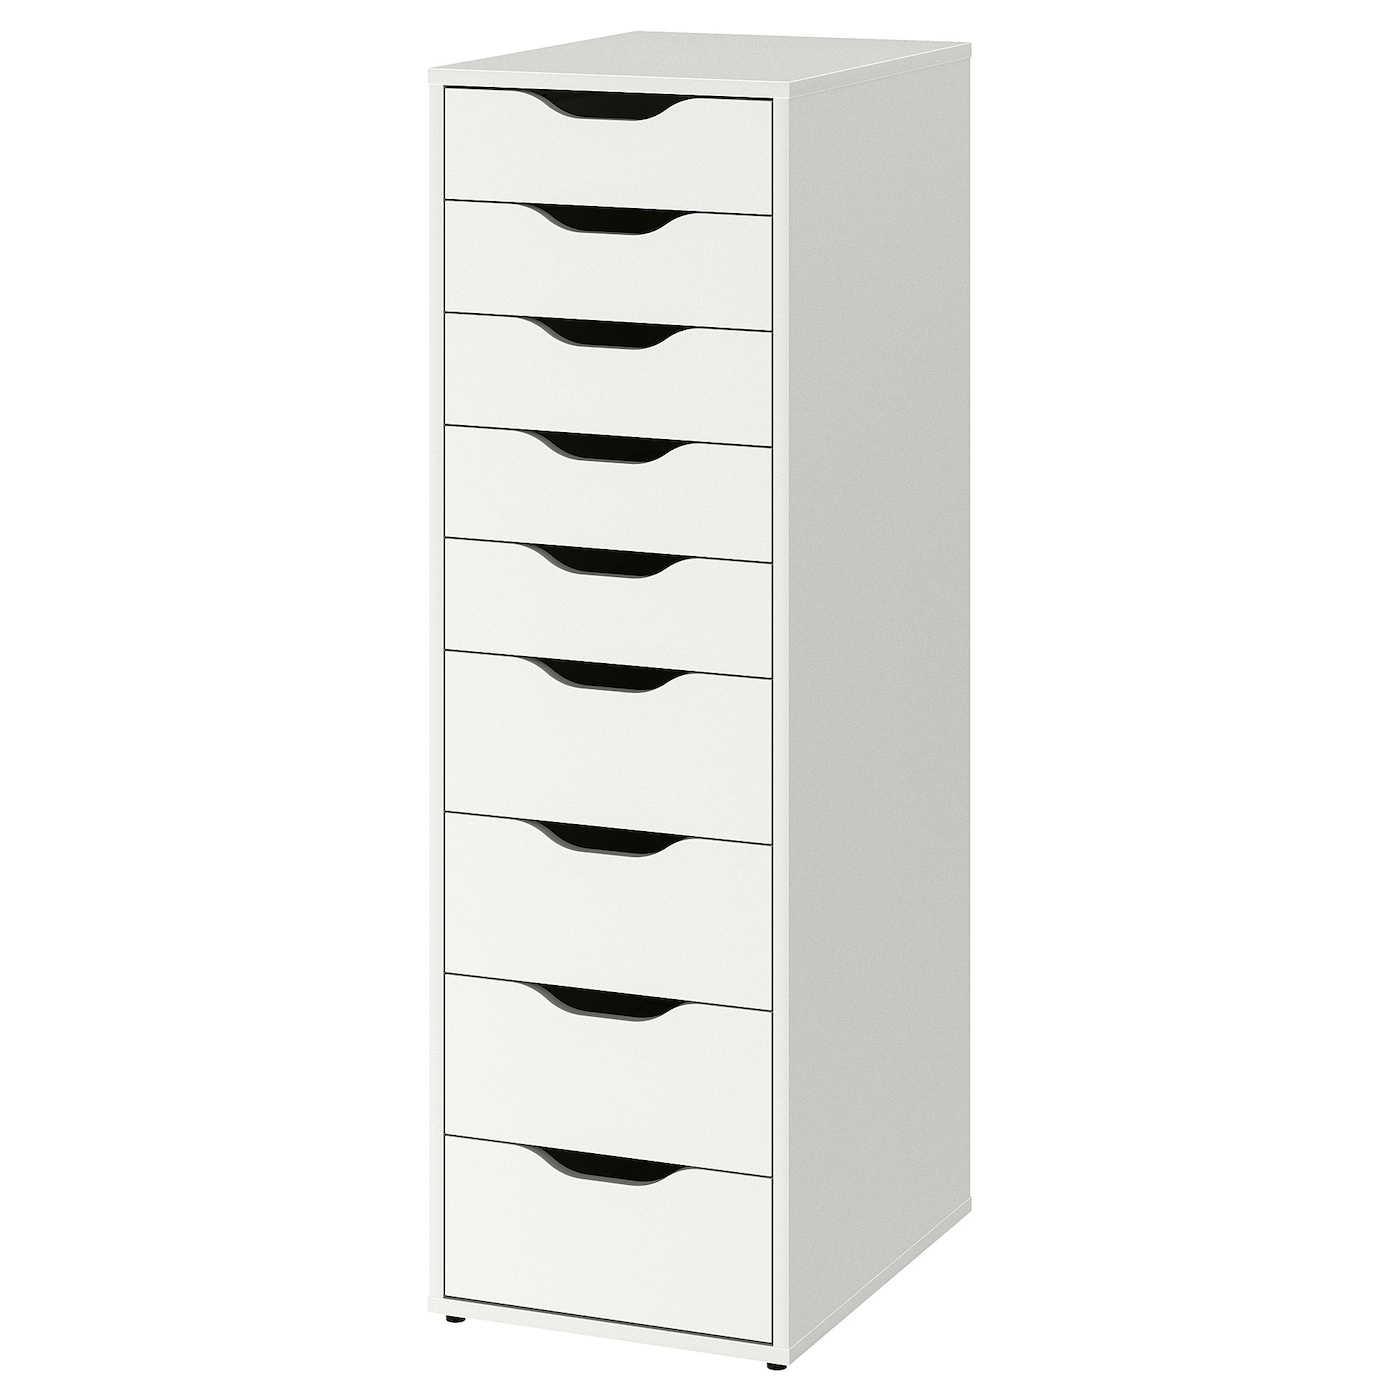 Блок хранения - IKEA ALEX, 36x116 см, белый, АЛЕКС ИКЕА